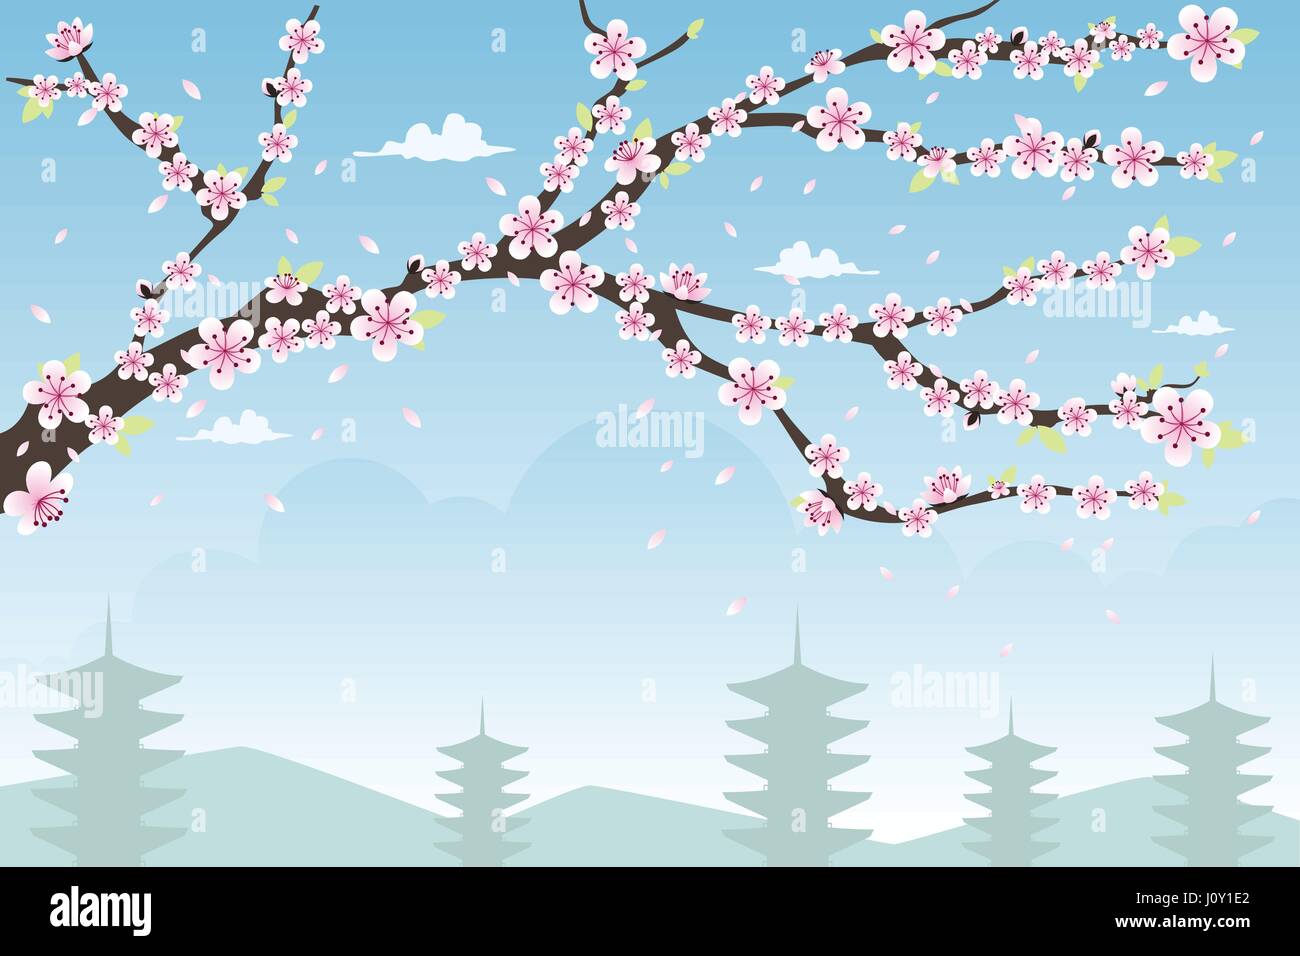 Eine Vektor-Illustration der Kirschblüte-Hintergrund-Design mit Exemplar Stock Vektor